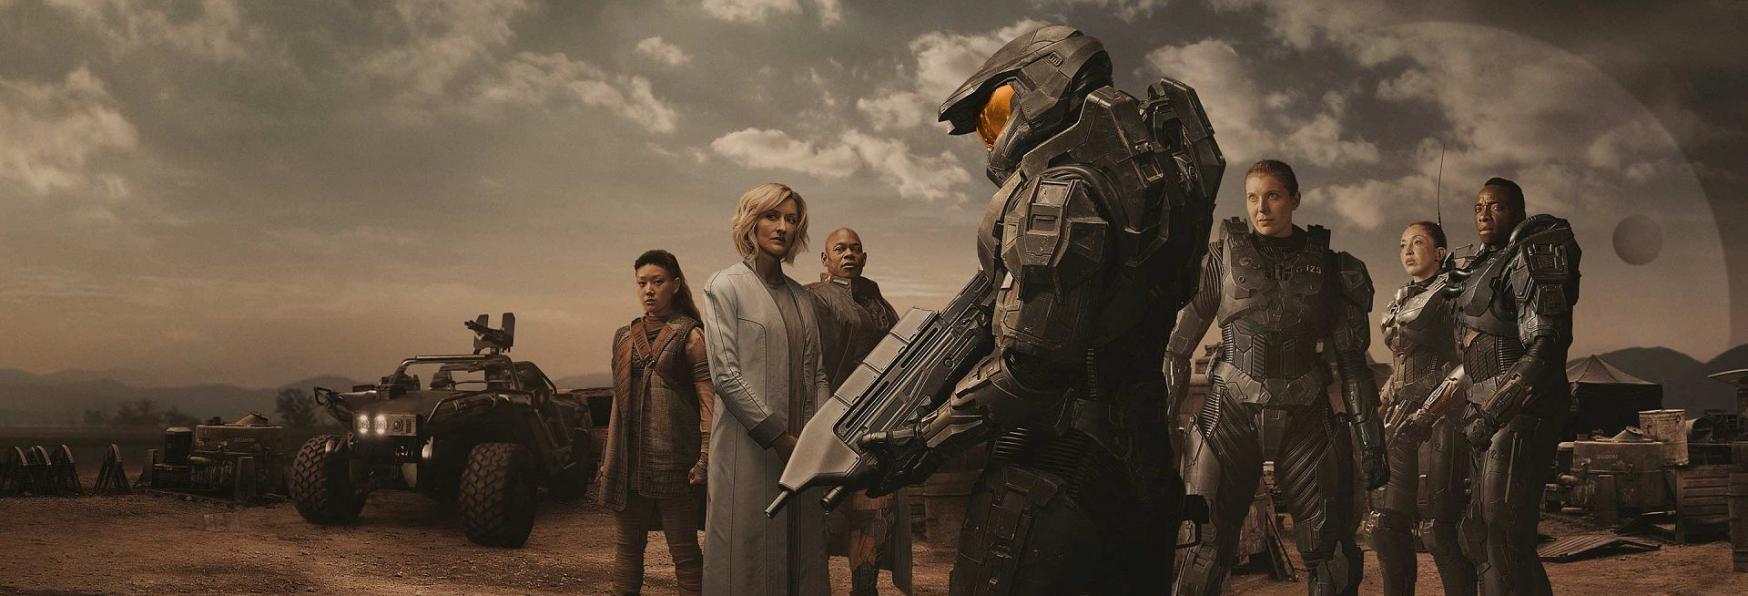 Halo 2: il Primo Teaser e la Data di Uscita della nuova Stagione